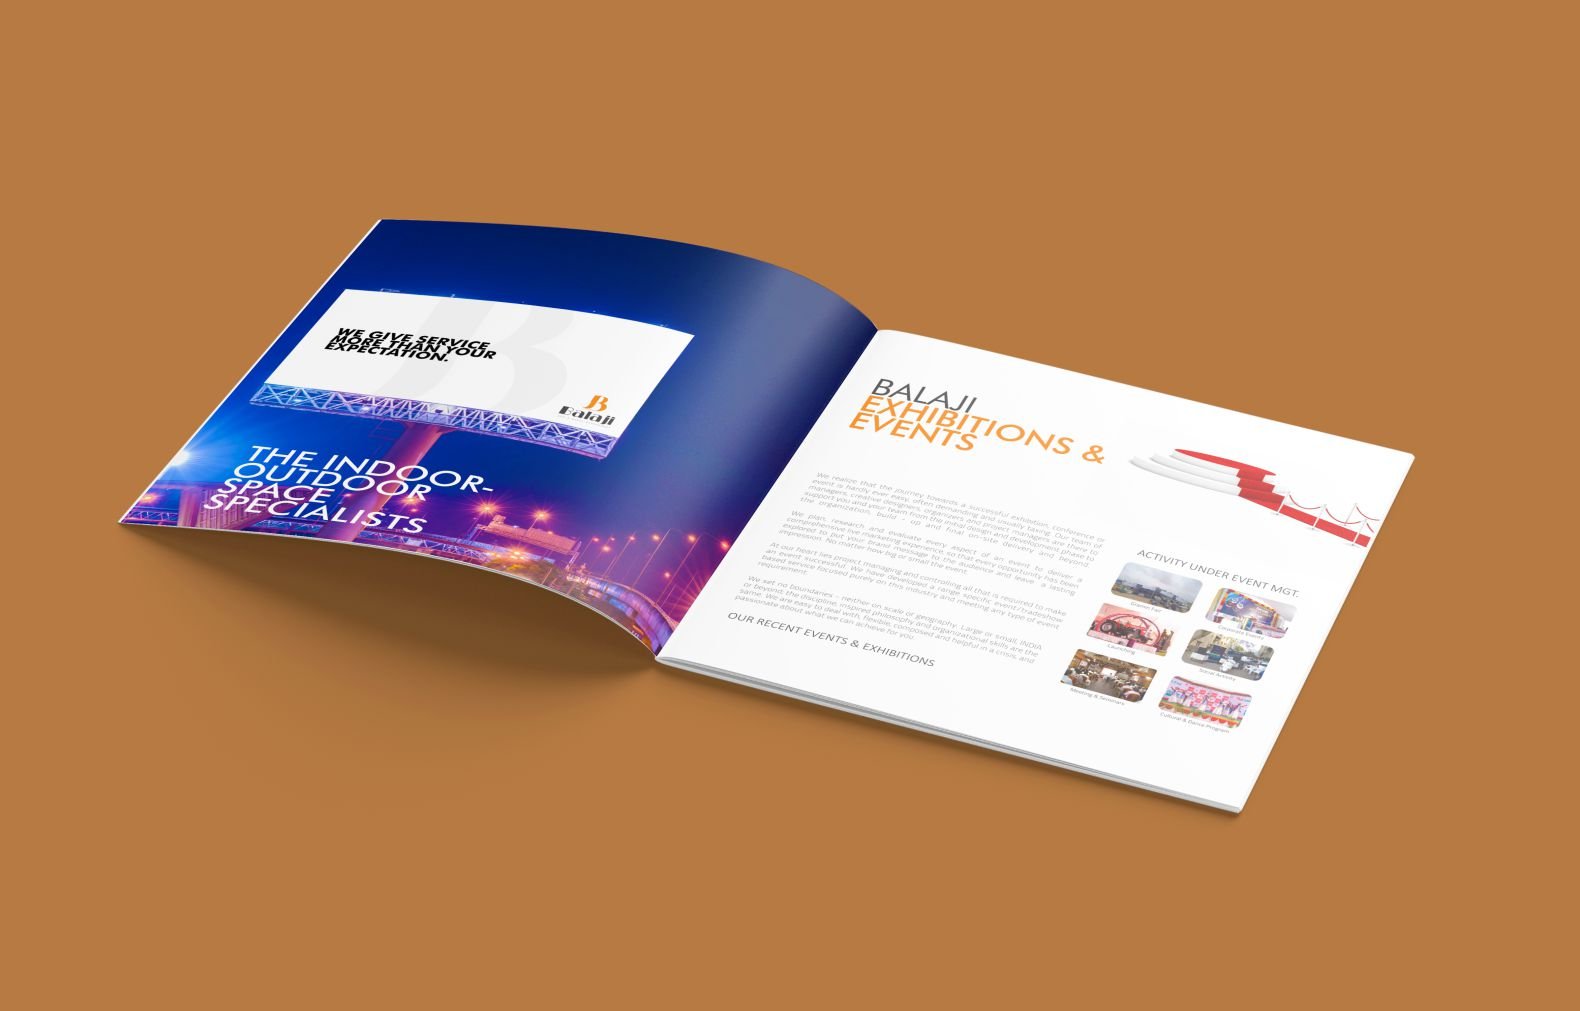 Balaji Catalogue Design - Spartan Branding | Creative Services